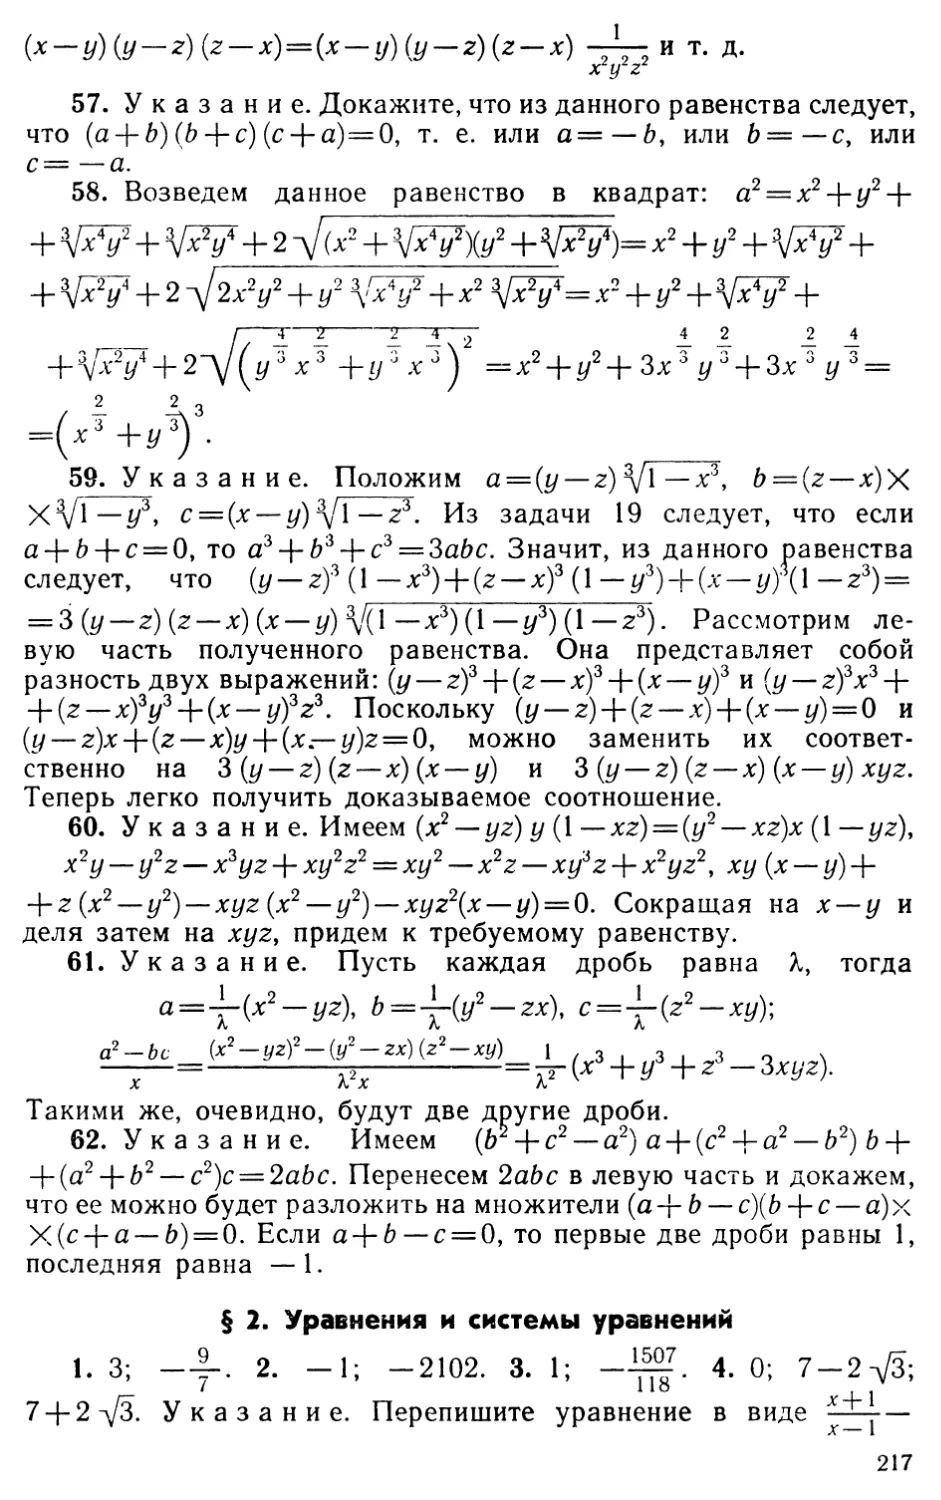 § 2. Уравнения и системы уравнений